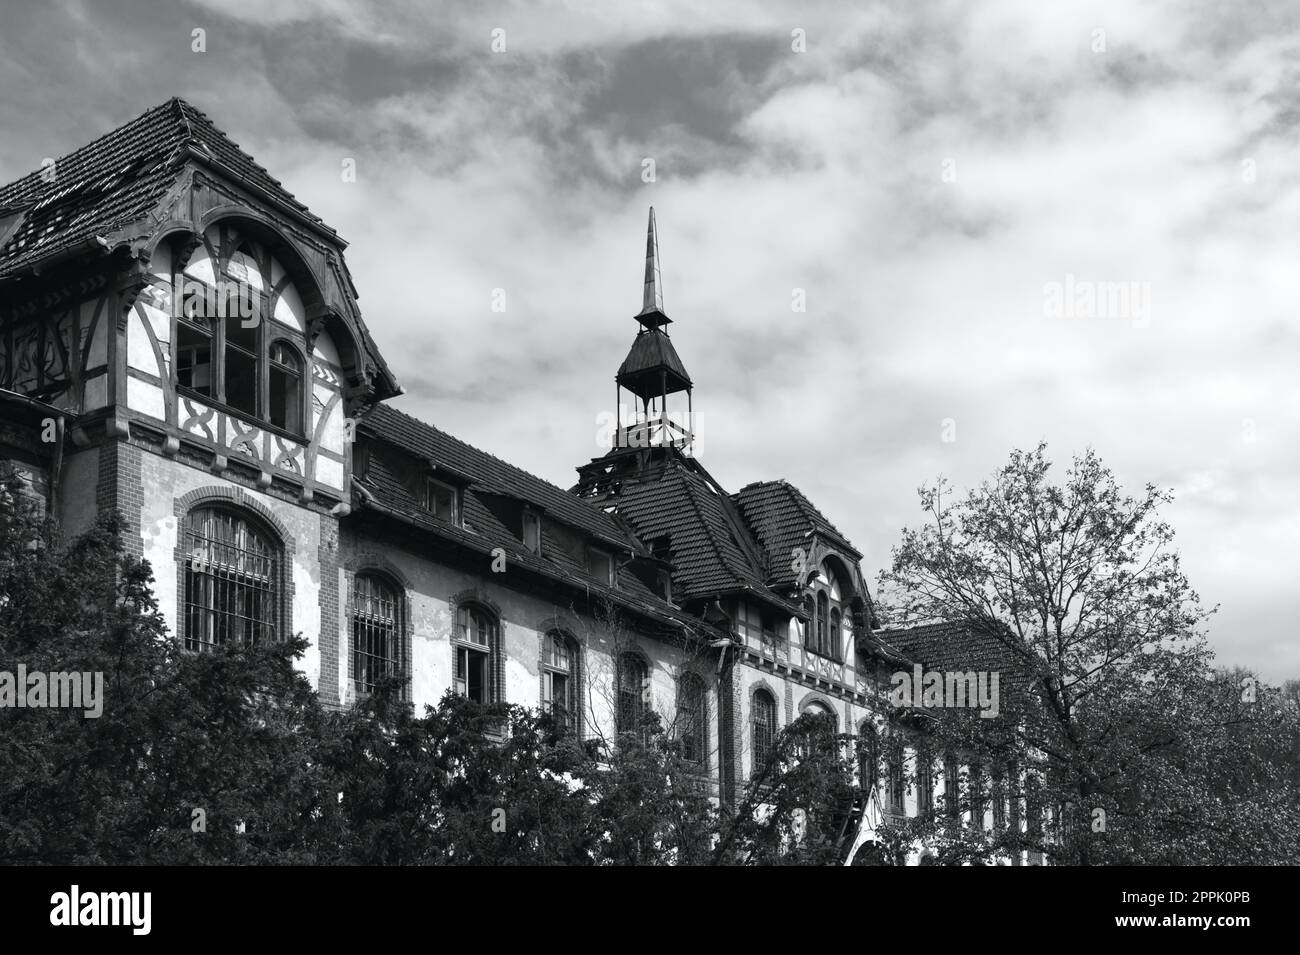 Verlassenes historisches Gebäude in Deutschland Krankenhaus Horrorszene gruselige Lage in Schwarz-Weiß Stockfoto